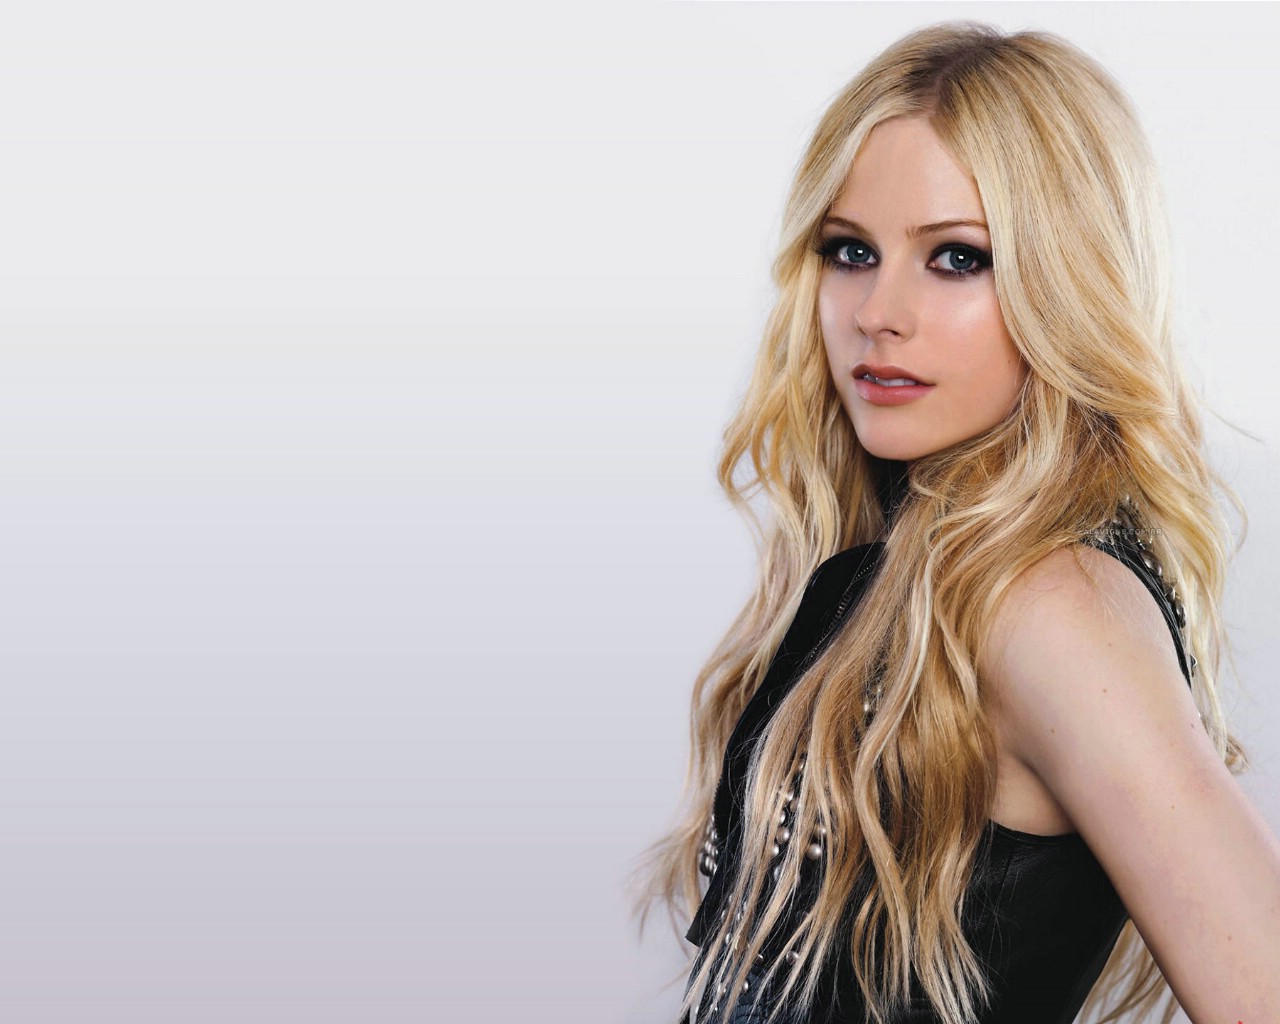 壁纸1400×1050艾薇儿 Avril Lavigne 壁纸95壁纸,艾薇儿 Avril Lavigne壁纸图片-明星壁纸-明星图片素材-桌面壁纸